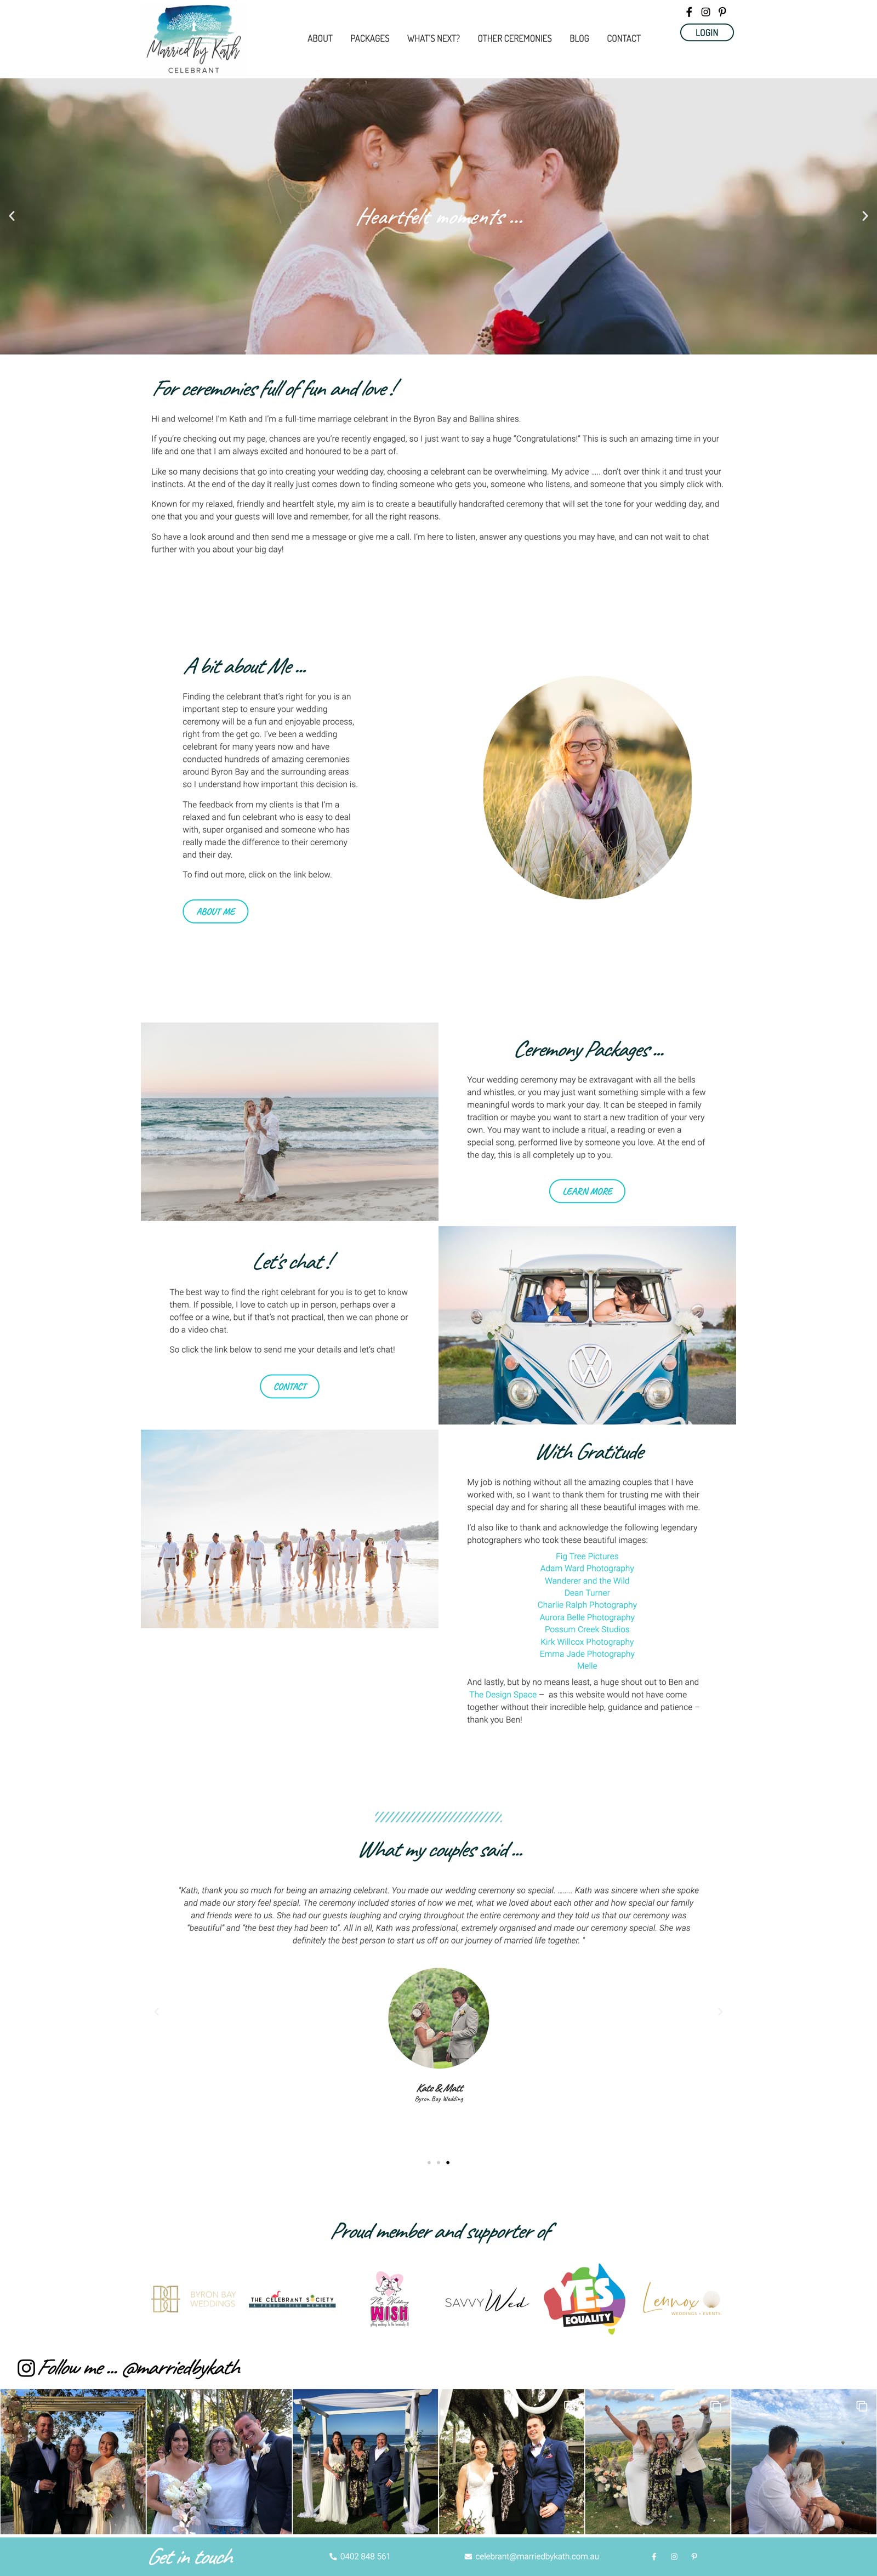 marriedbykath-website-design-byron-bay